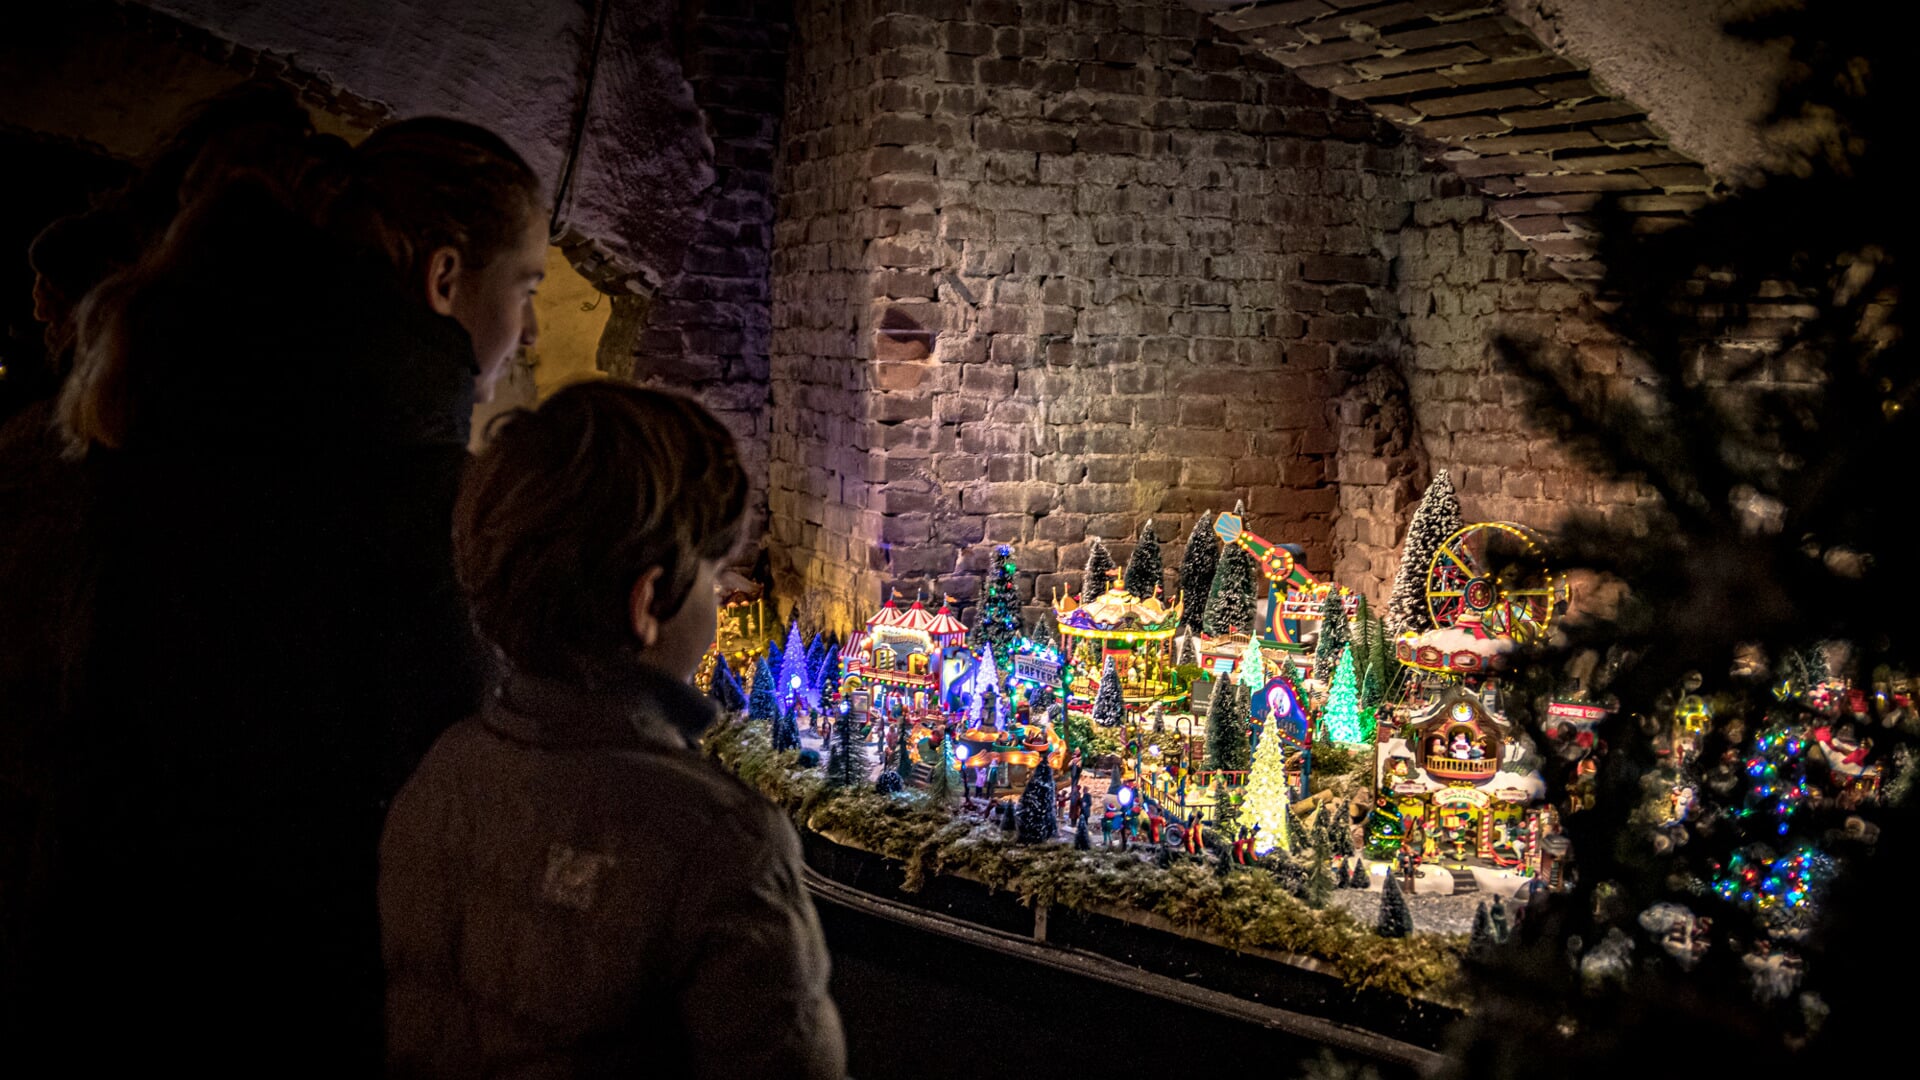  De ondergrondse crypte van de KoepelKathedraal is omgetoverd tot een sprookjesachtig en magisch kersttafereel 